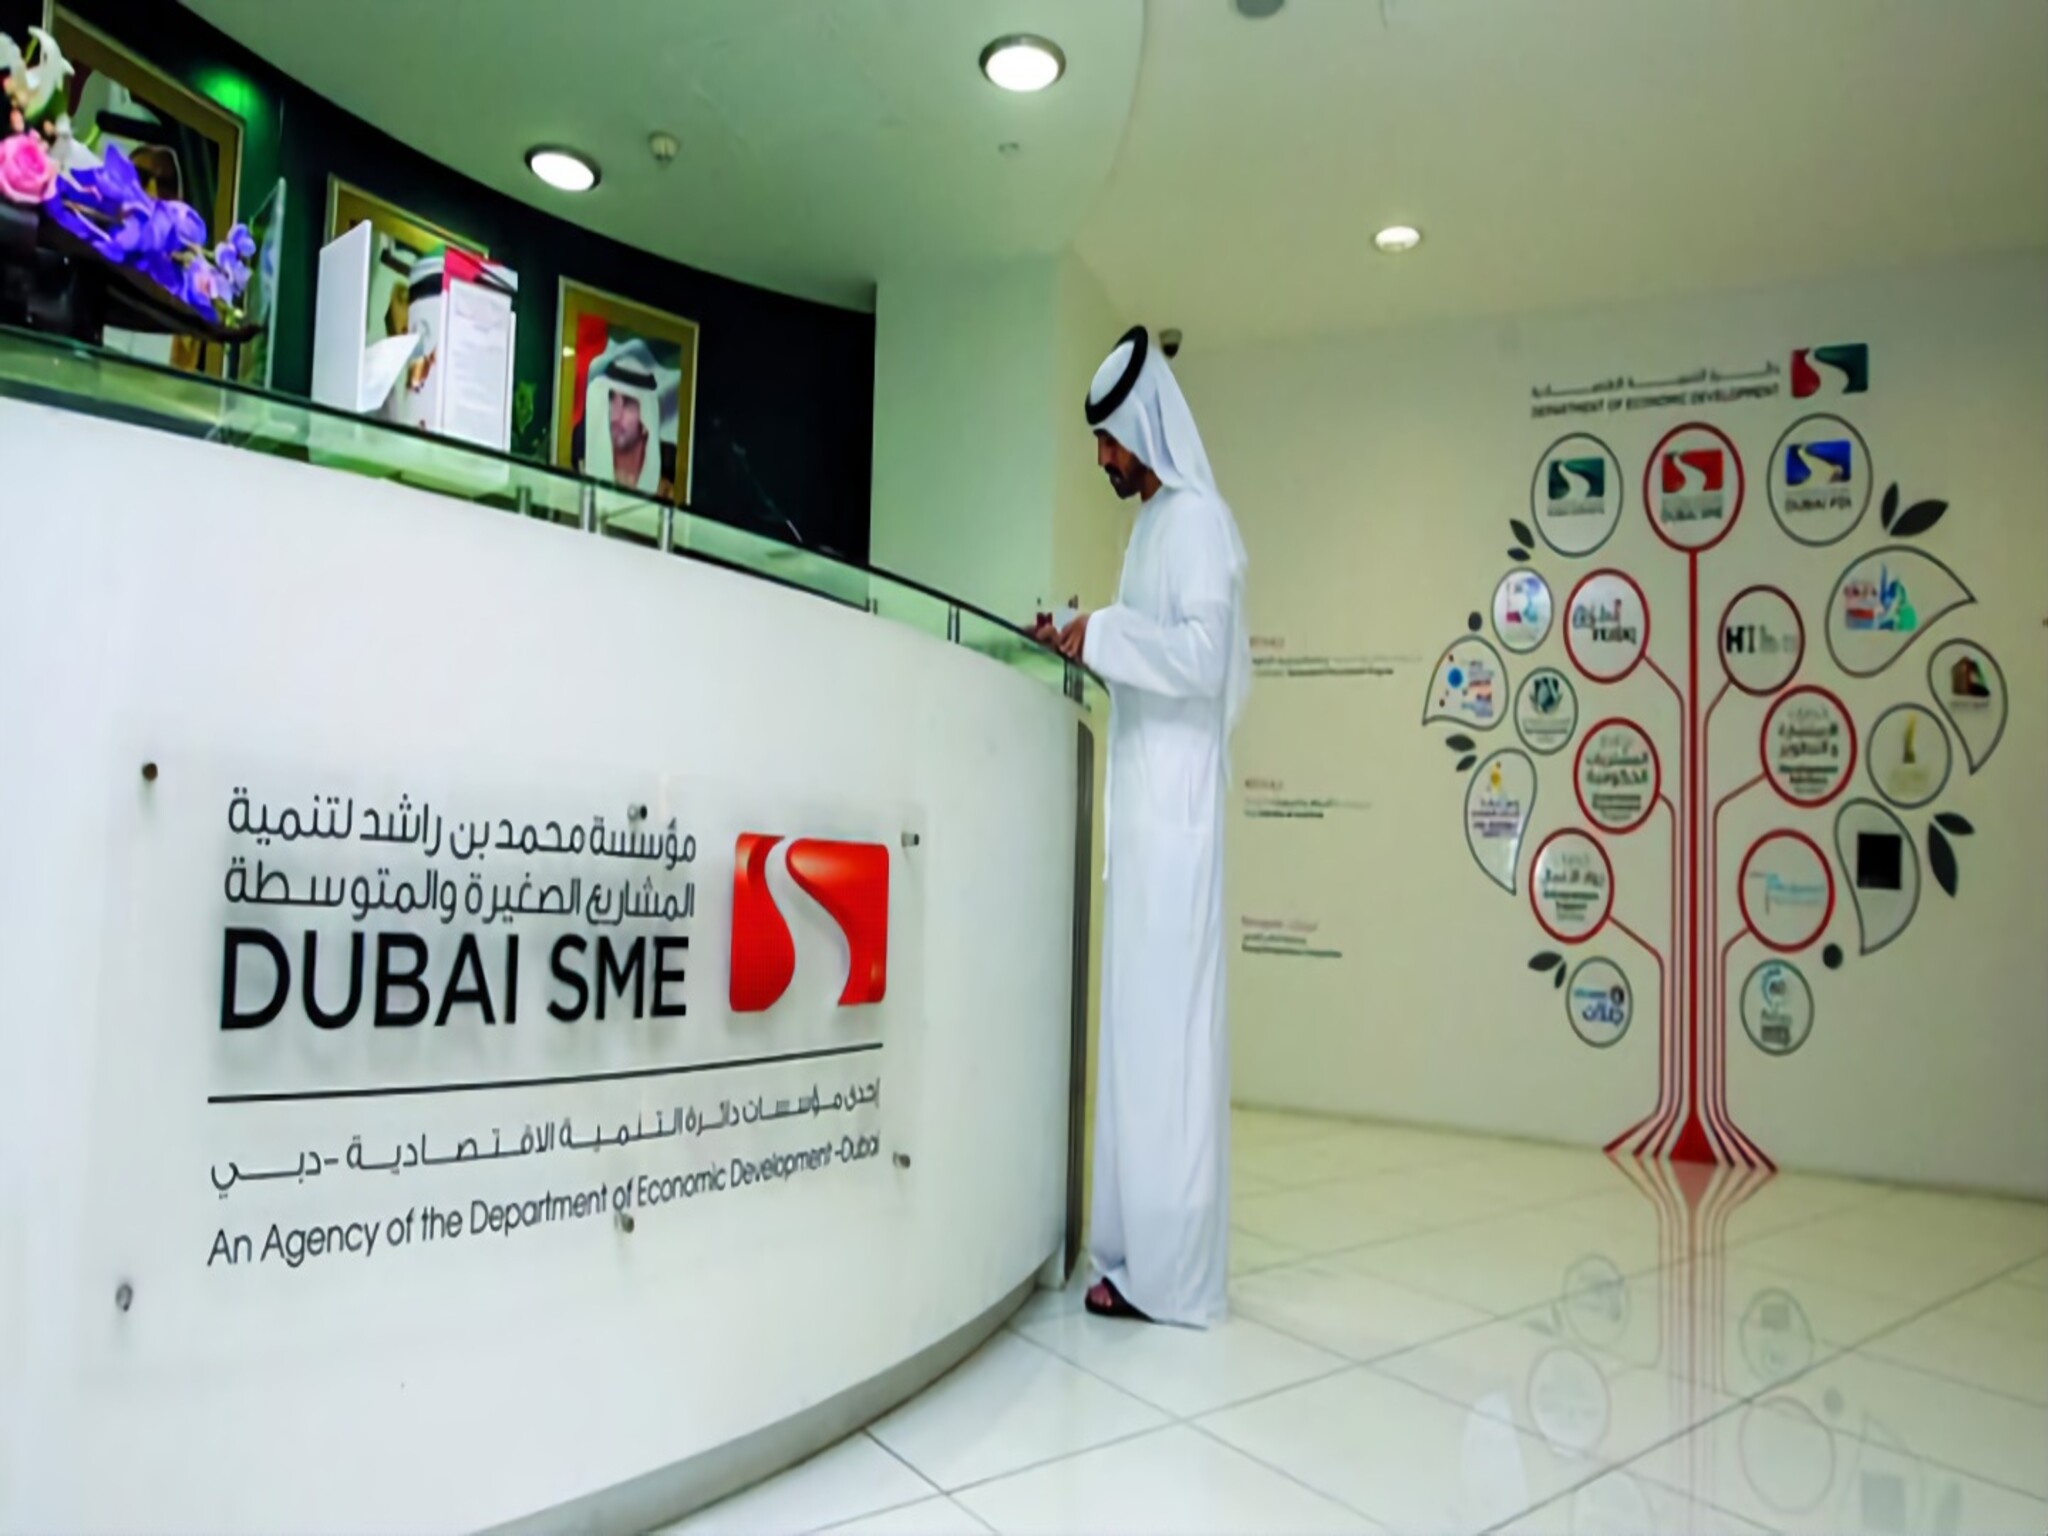 مؤسسة محمد بن راشد تطلق مبادرة "قرض الأعمال المتضررة جراء الحالة الجوية" في دبي